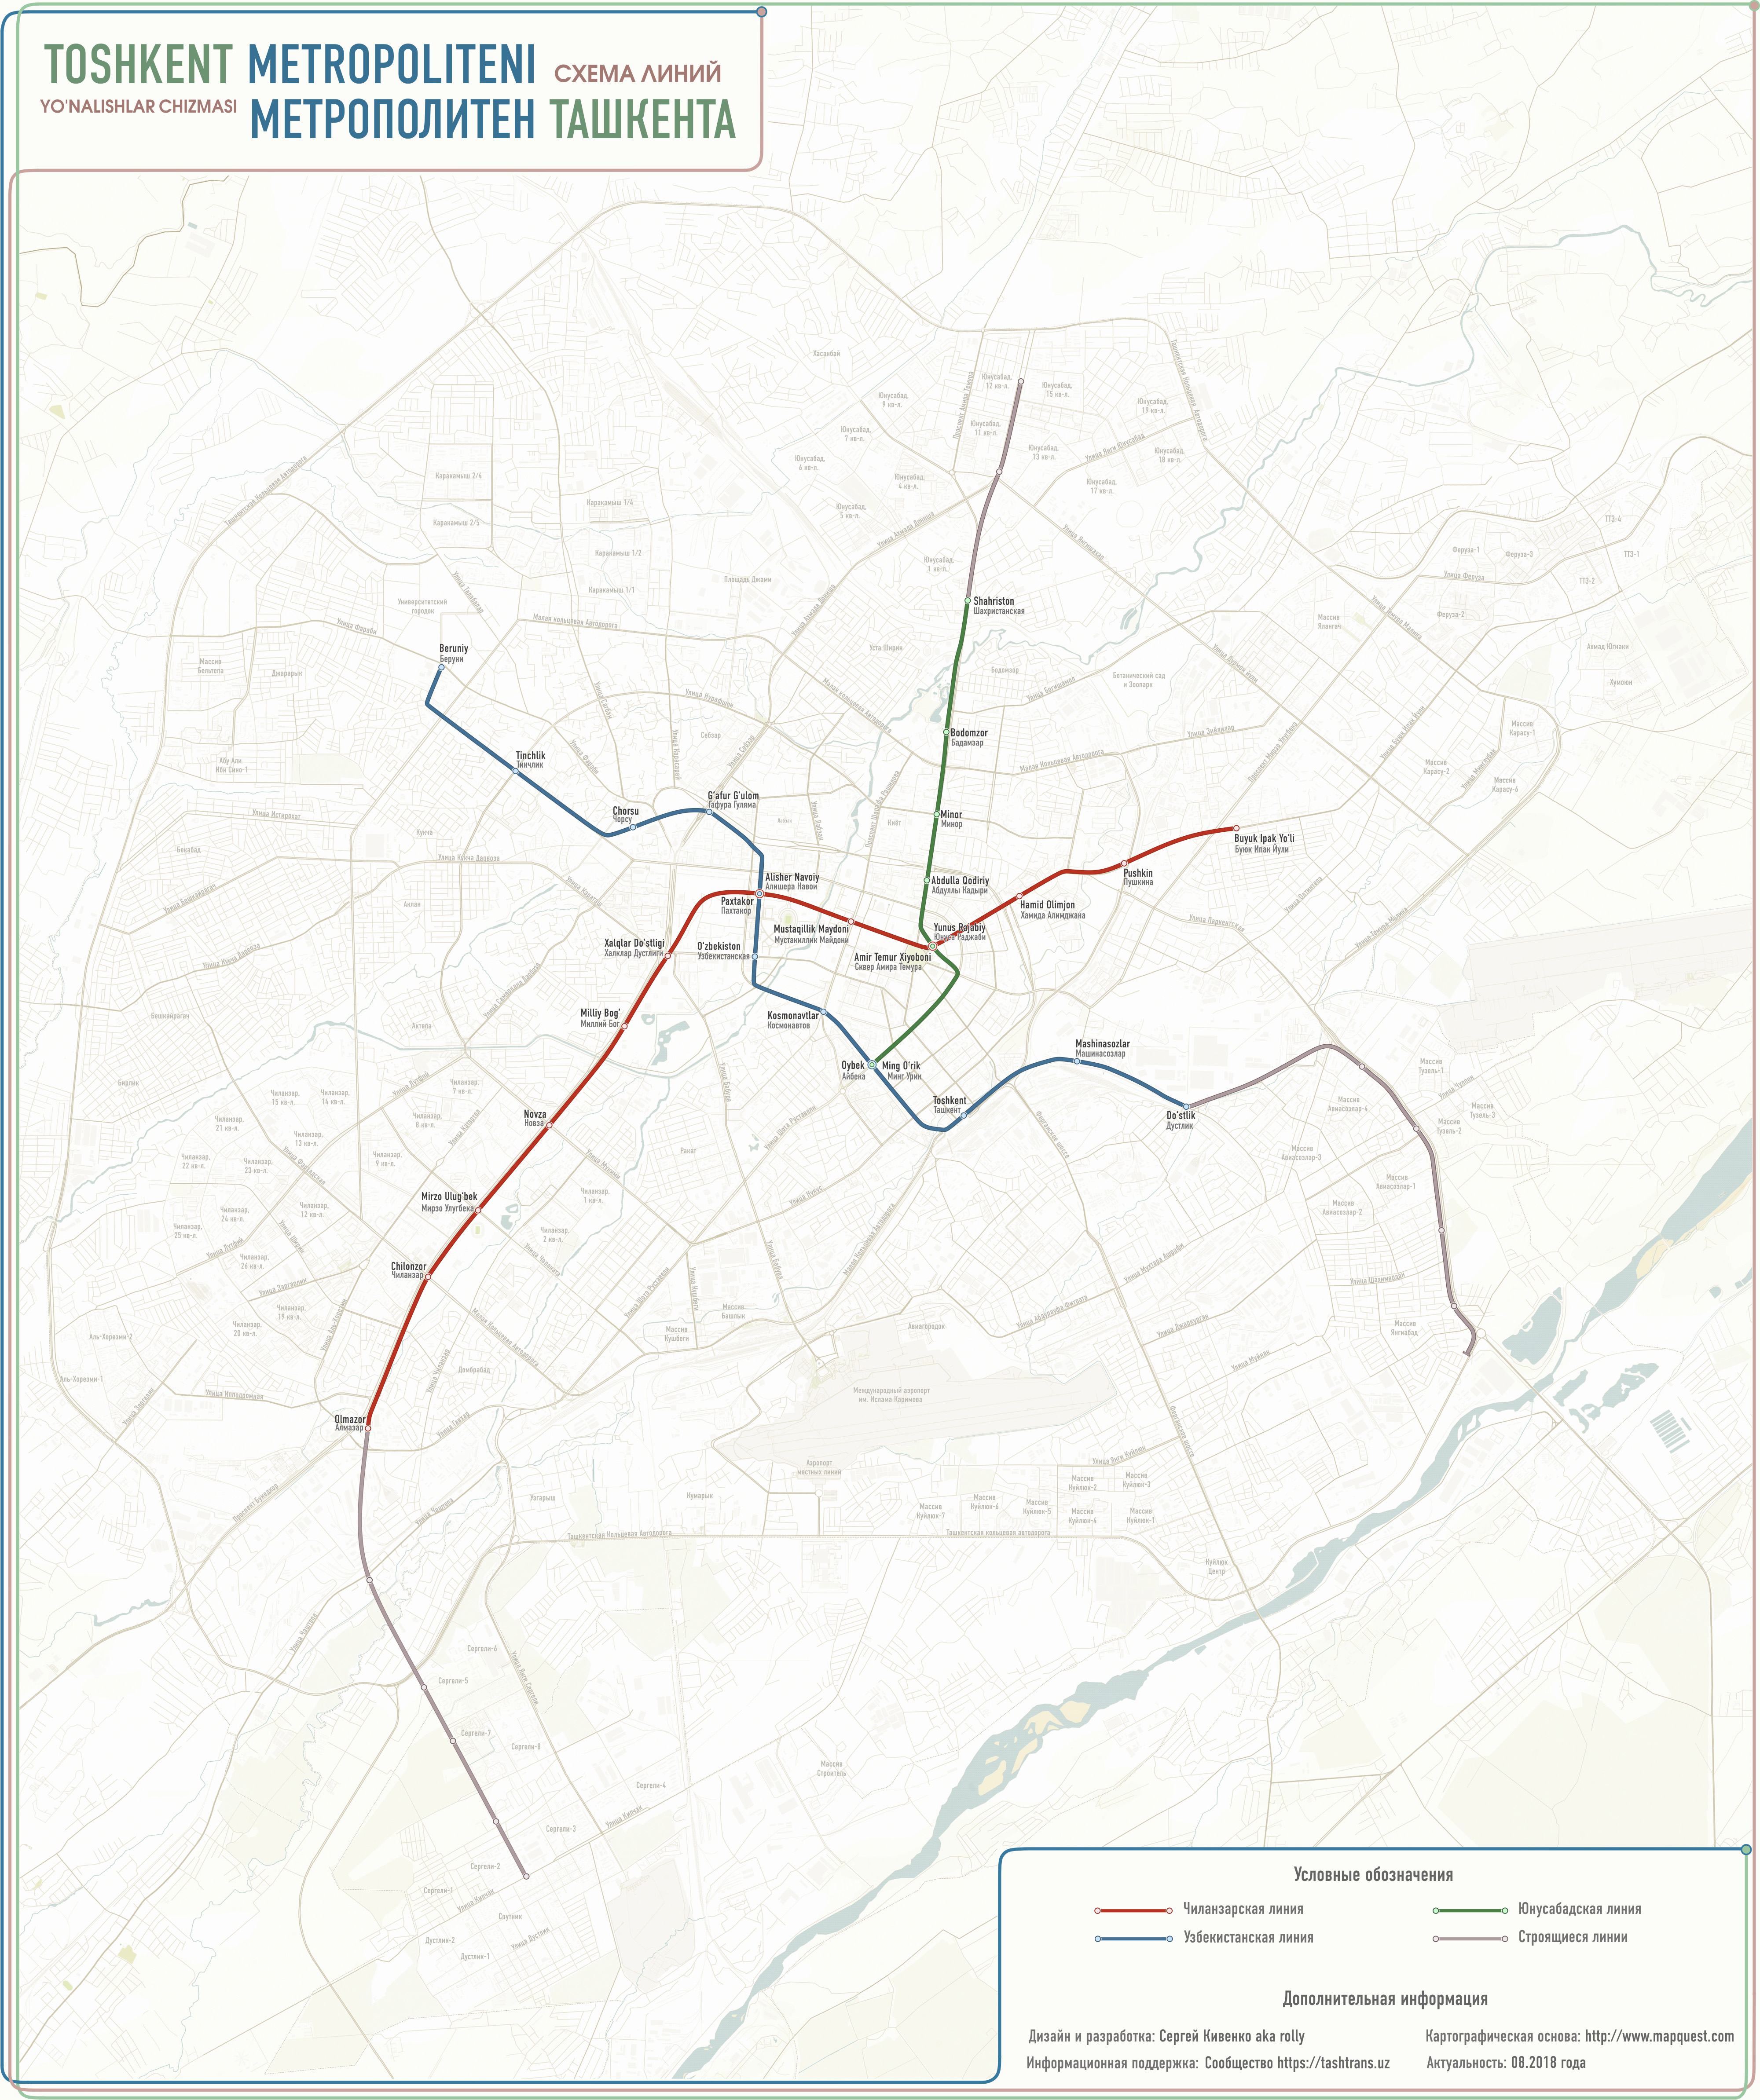 Tashkent — Metro — Maps